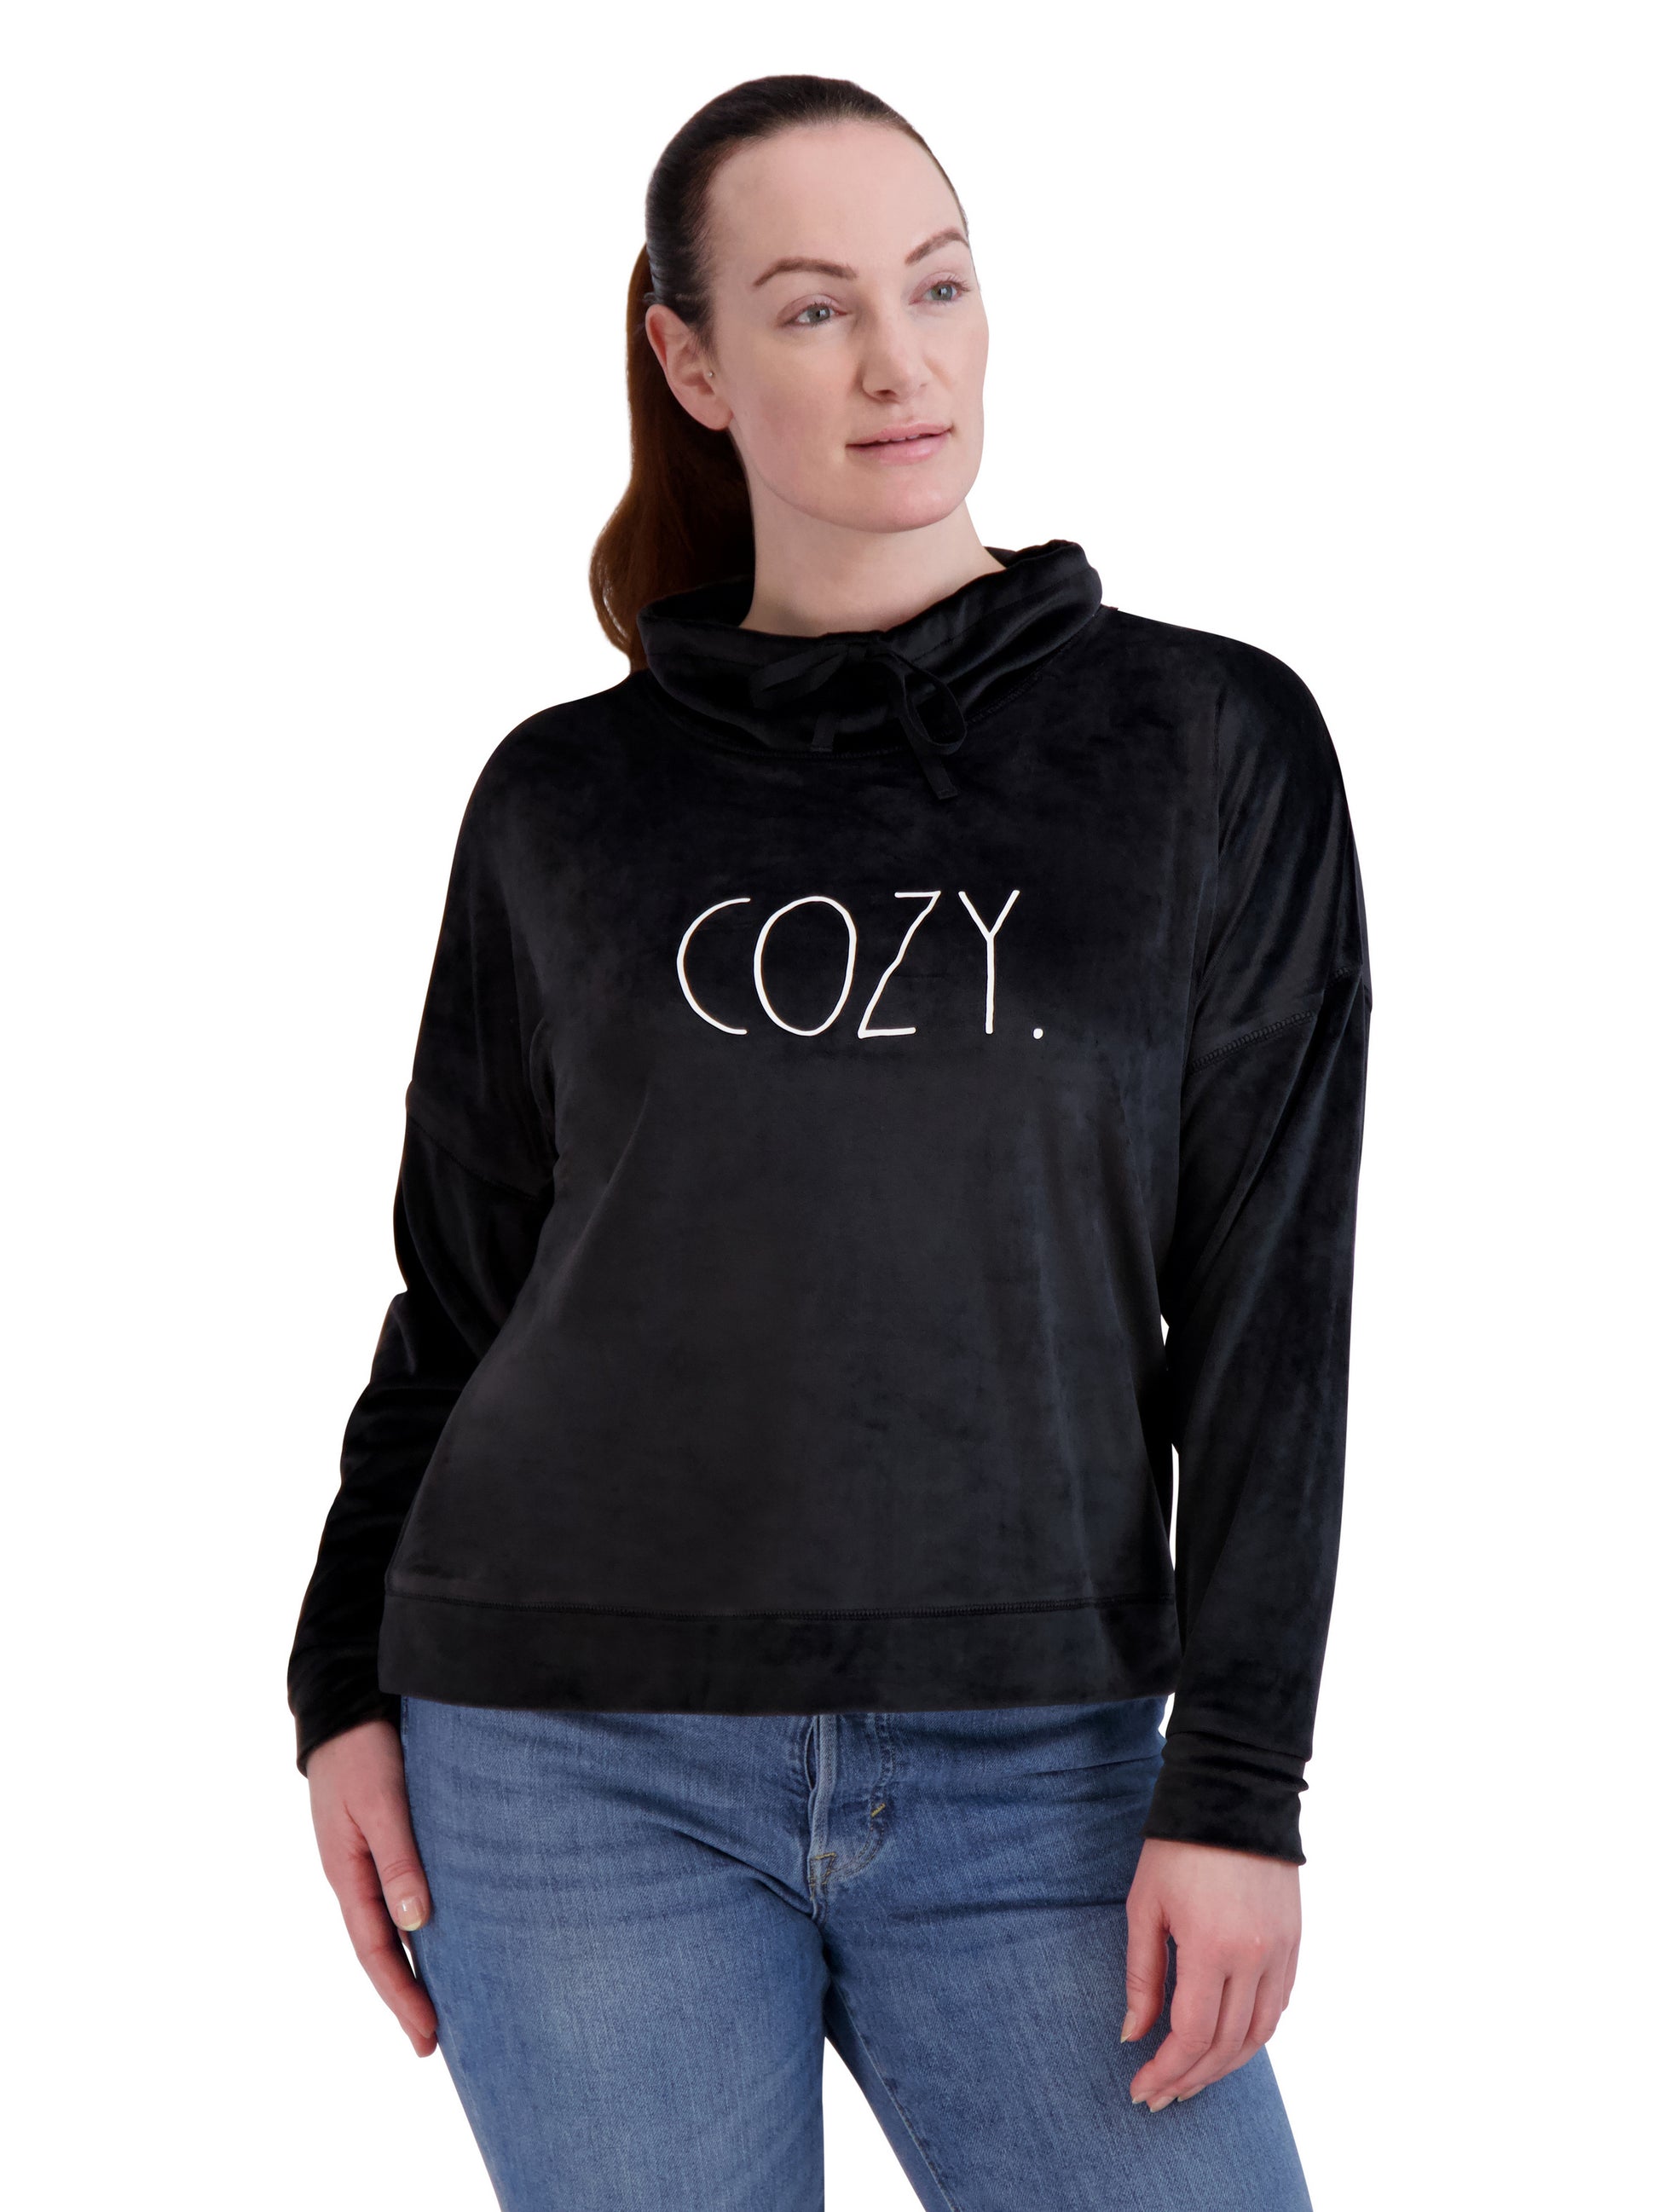 Women's Velour "COZY" Funnel Neck Sweatshirt - Rae Dunn Wear - W Sweatshirt